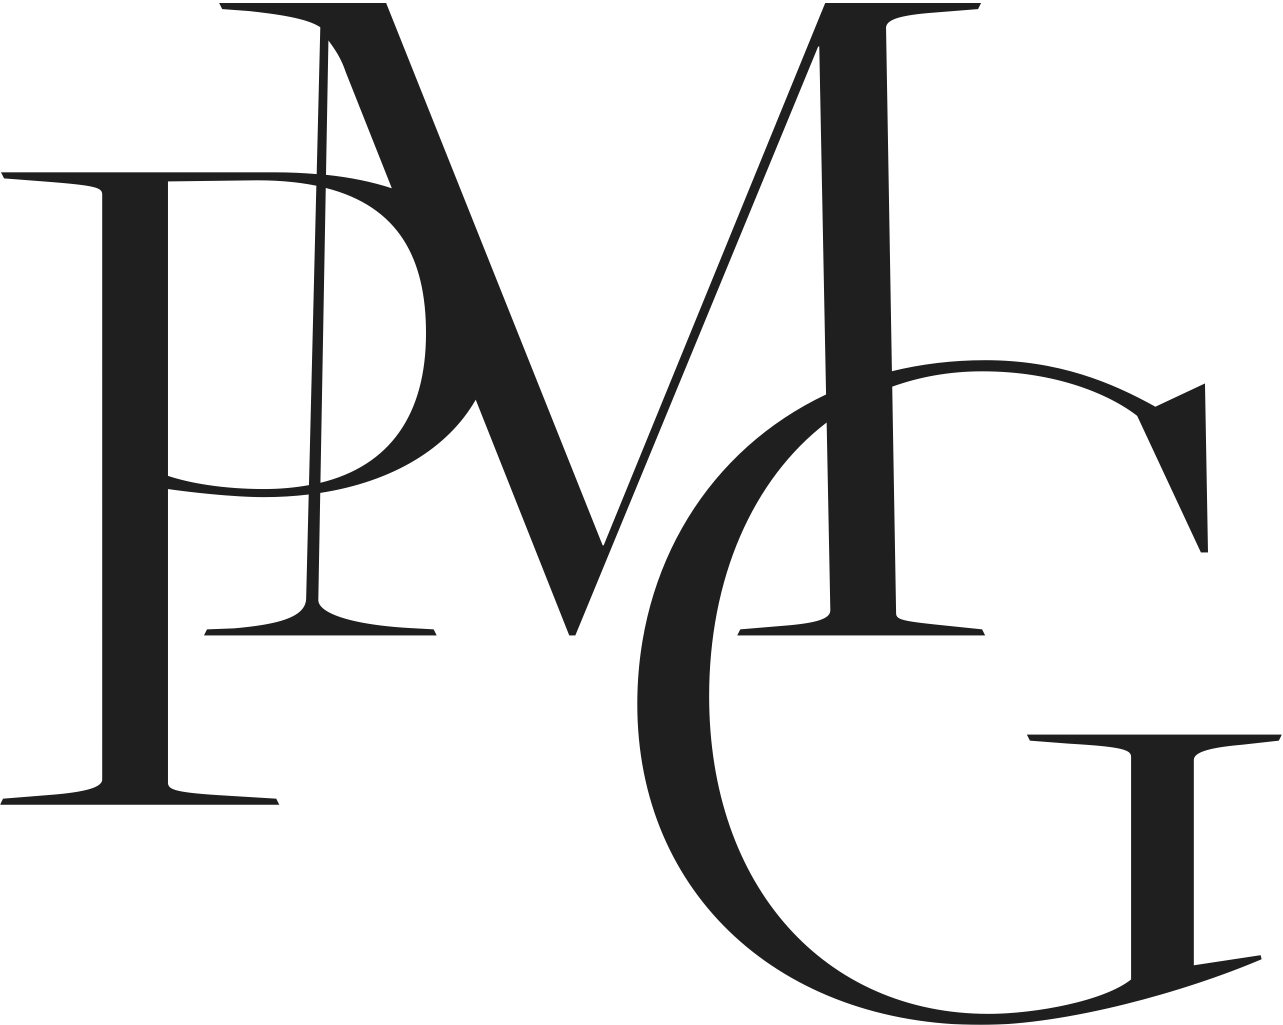 PMG Logo.png